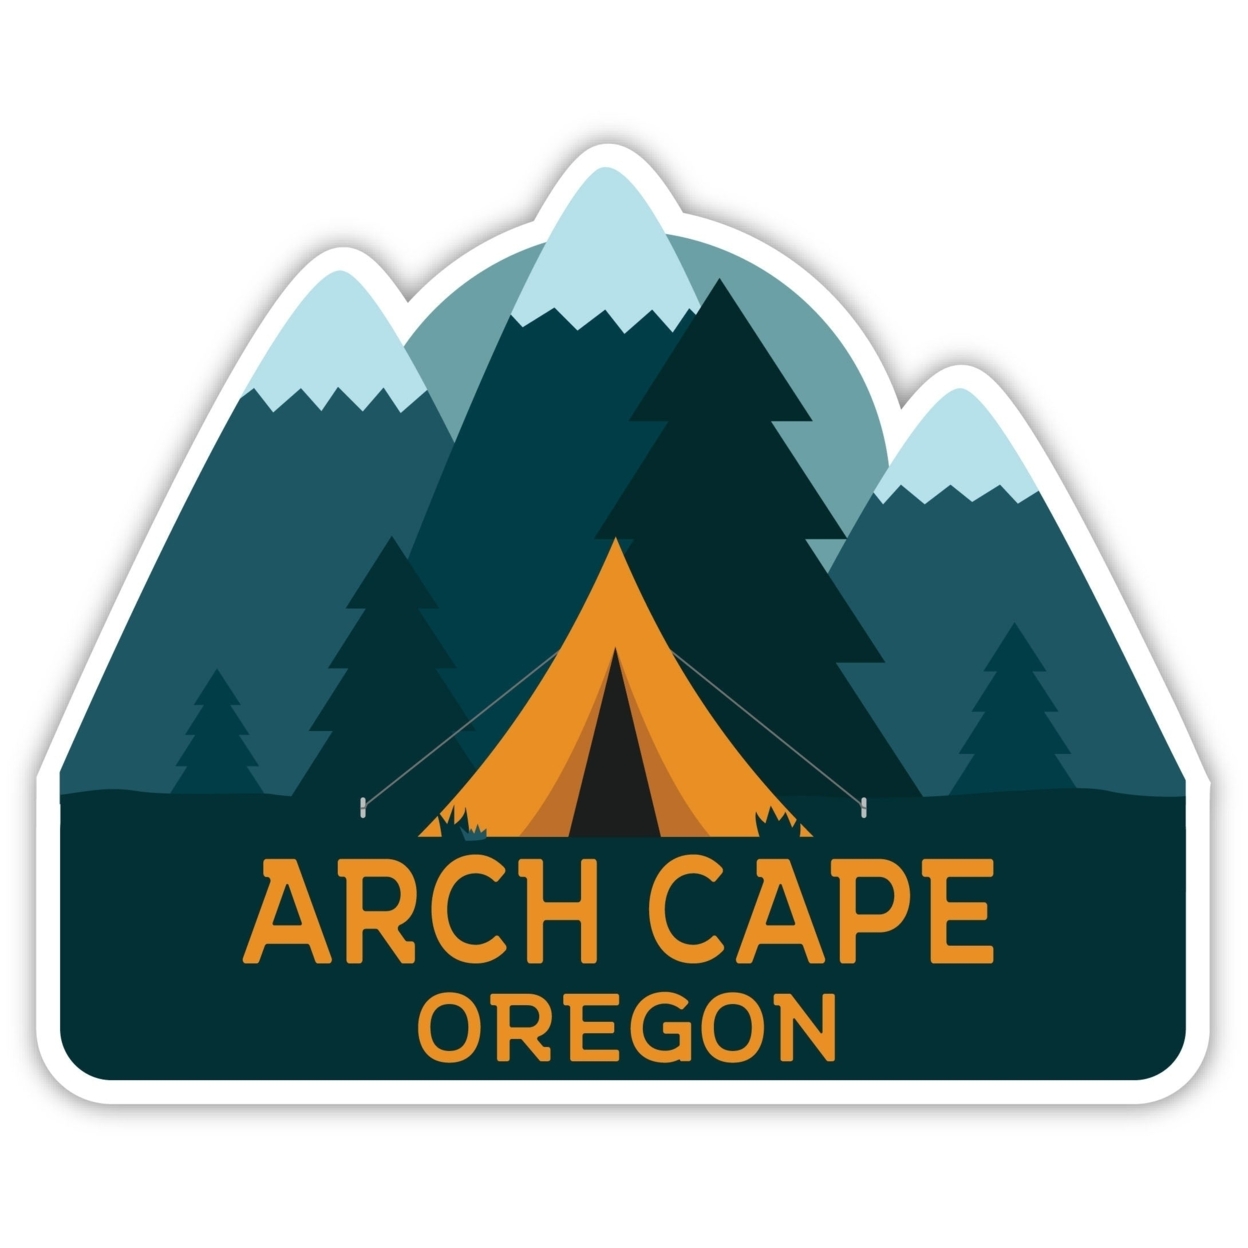 Arch Cape Oregon Souvenir Decorative Stickers (Choose Theme And Size) - Single Unit, 6-Inch, Tent